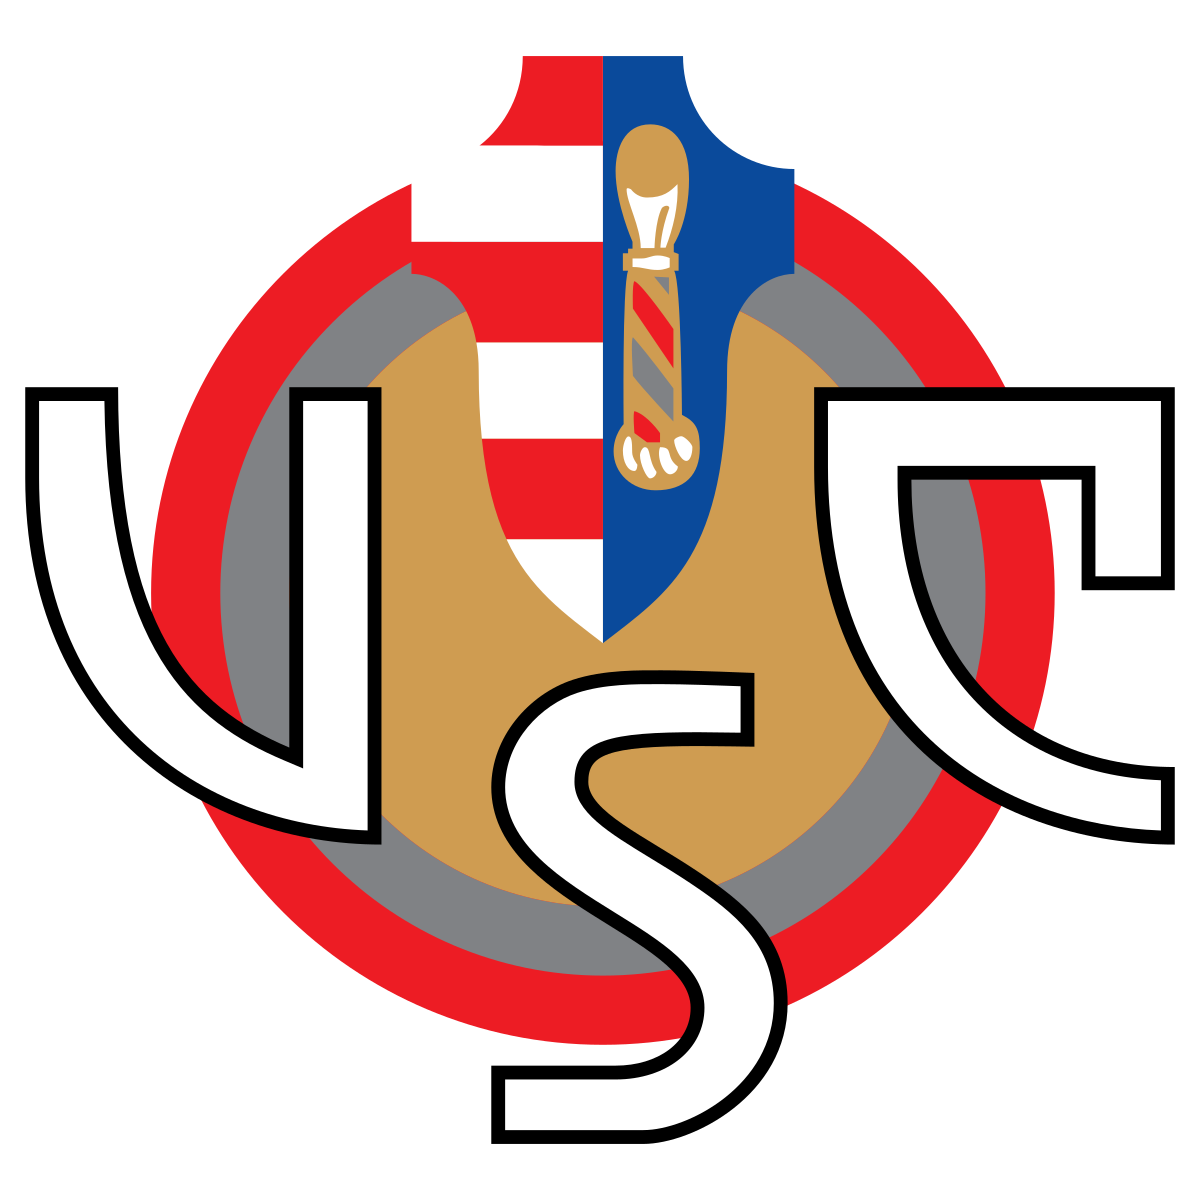 克雷莫纳logo